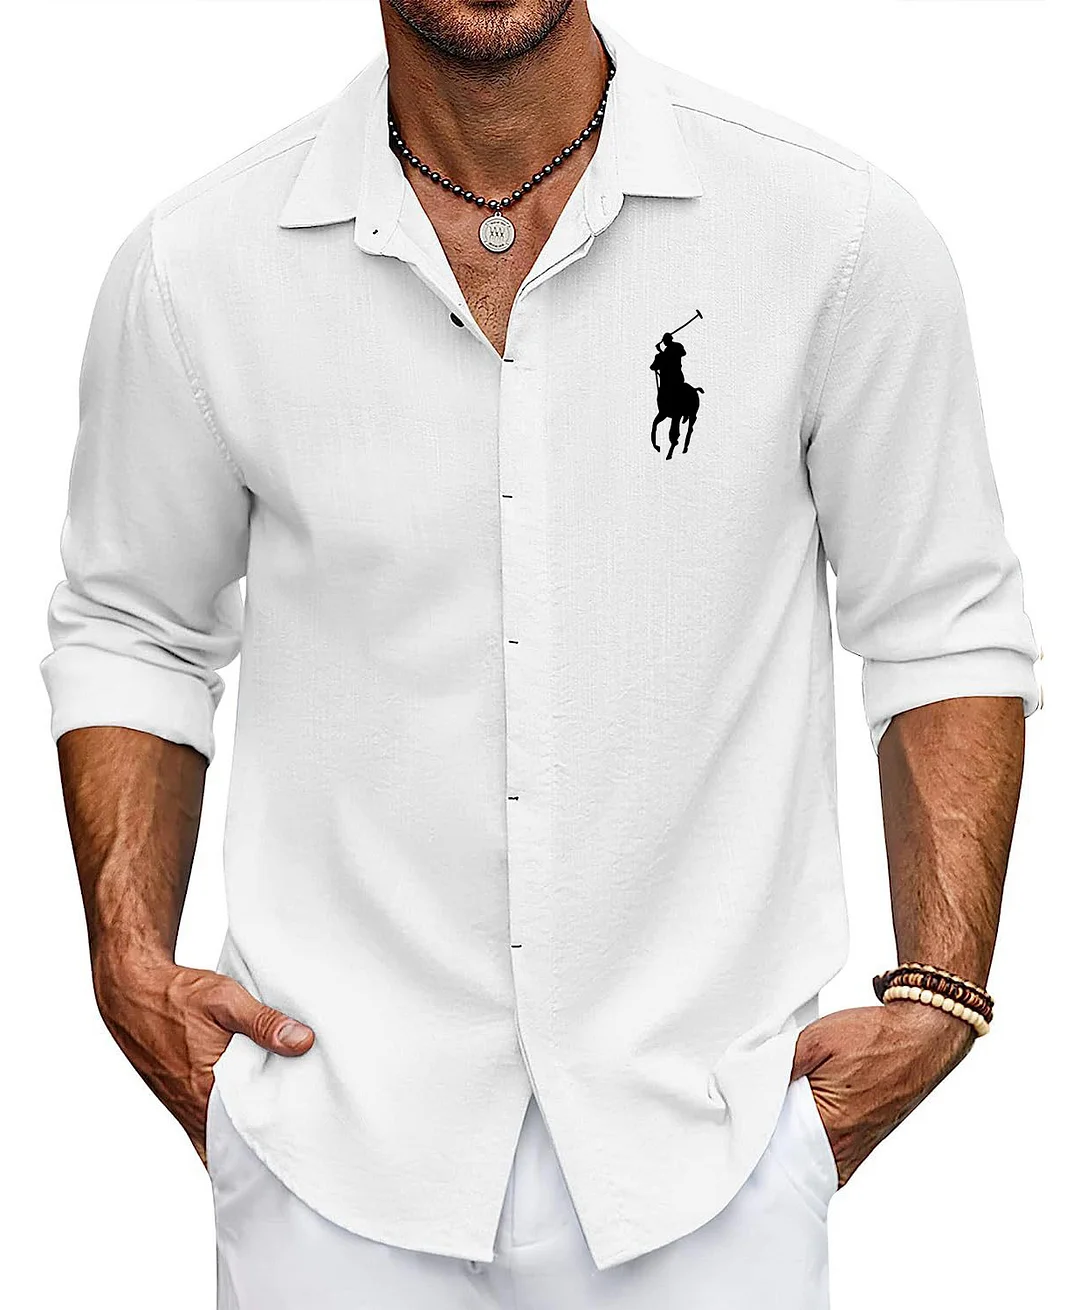 Men's Cotton Button Up Shirt